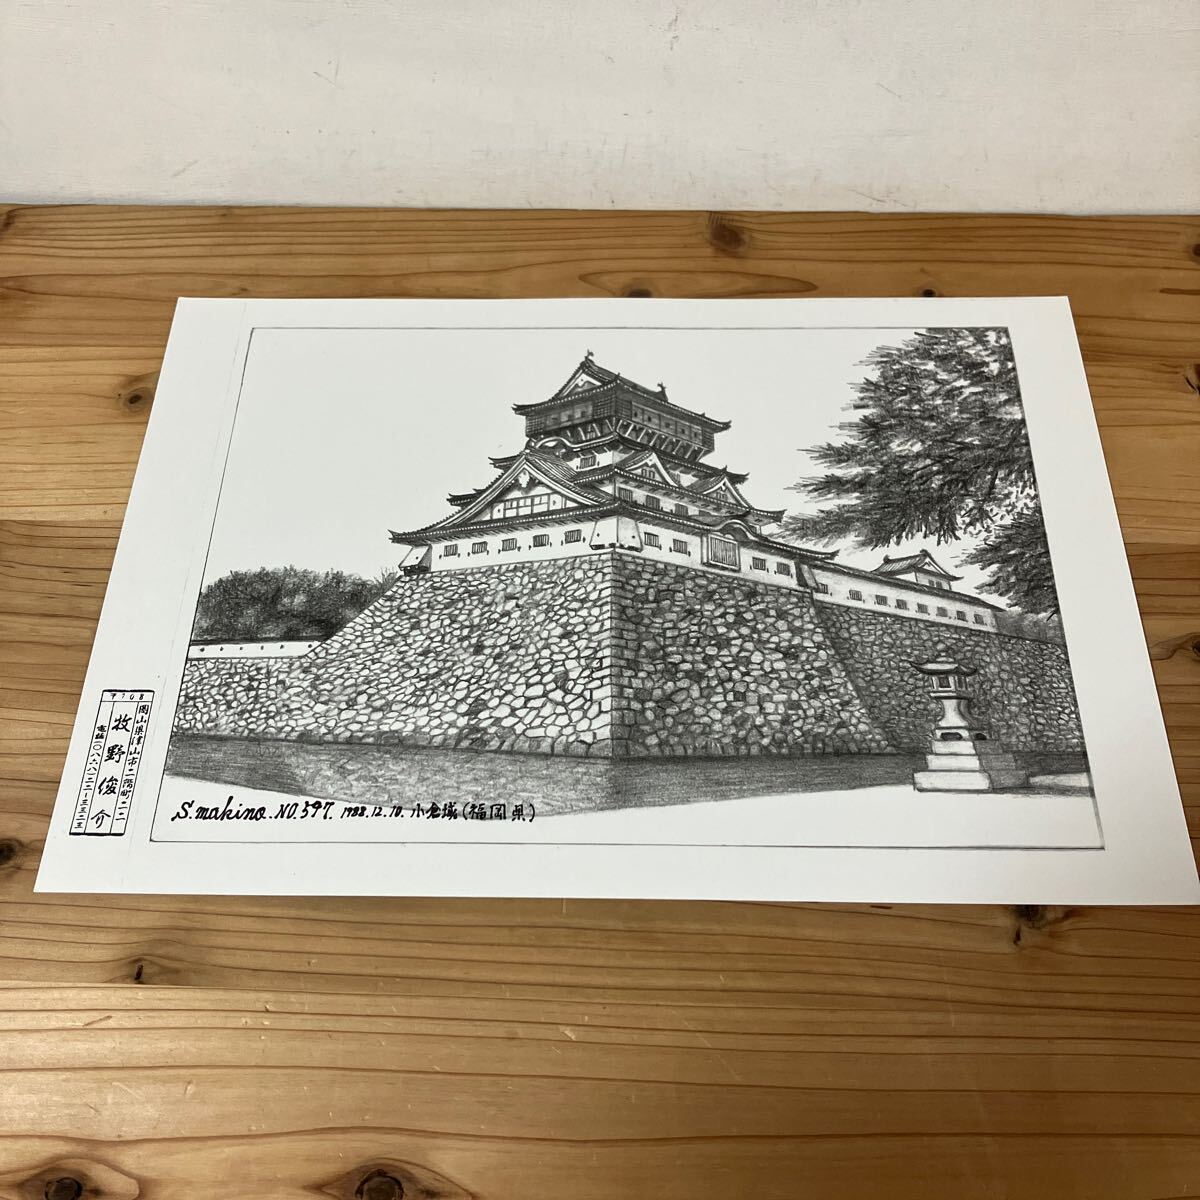 ماو H0305 [قلعة ماكينو شونسوكي كوكورا رقم 597 طباعة رسم بالقلم الرصاص] 1888, عمل فني, تلوين, الرسم بقلم الرصاص, الفحم الرسم